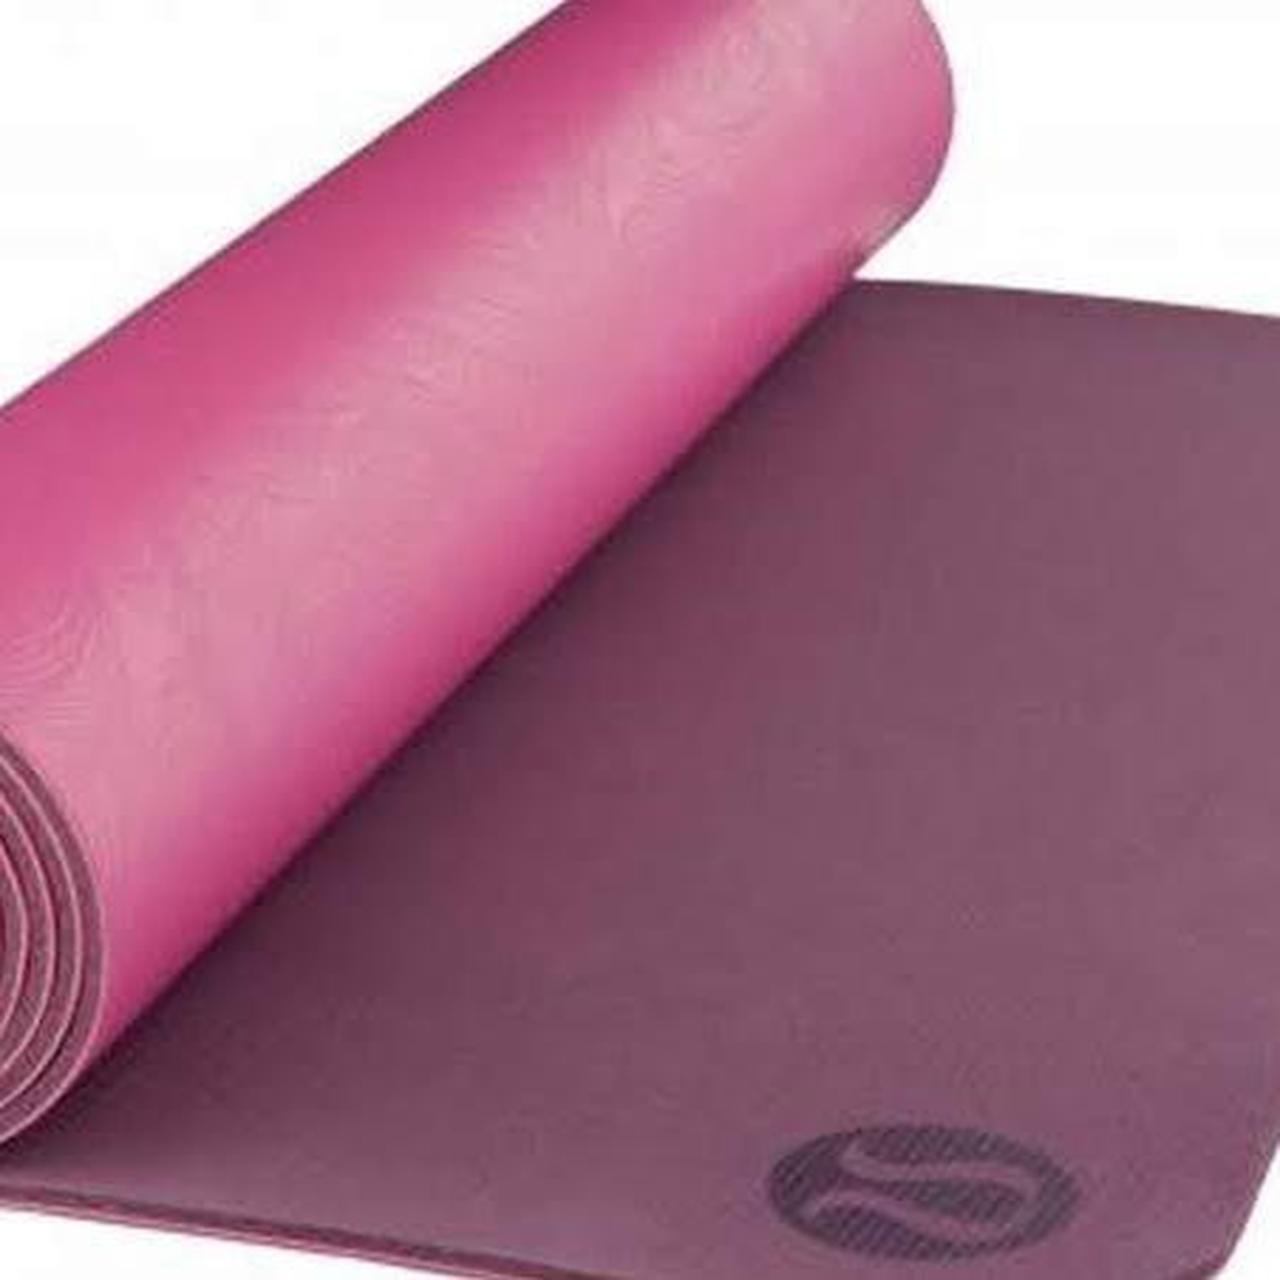 Lululemon Yoga Mat Still in packaging - never used - Depop